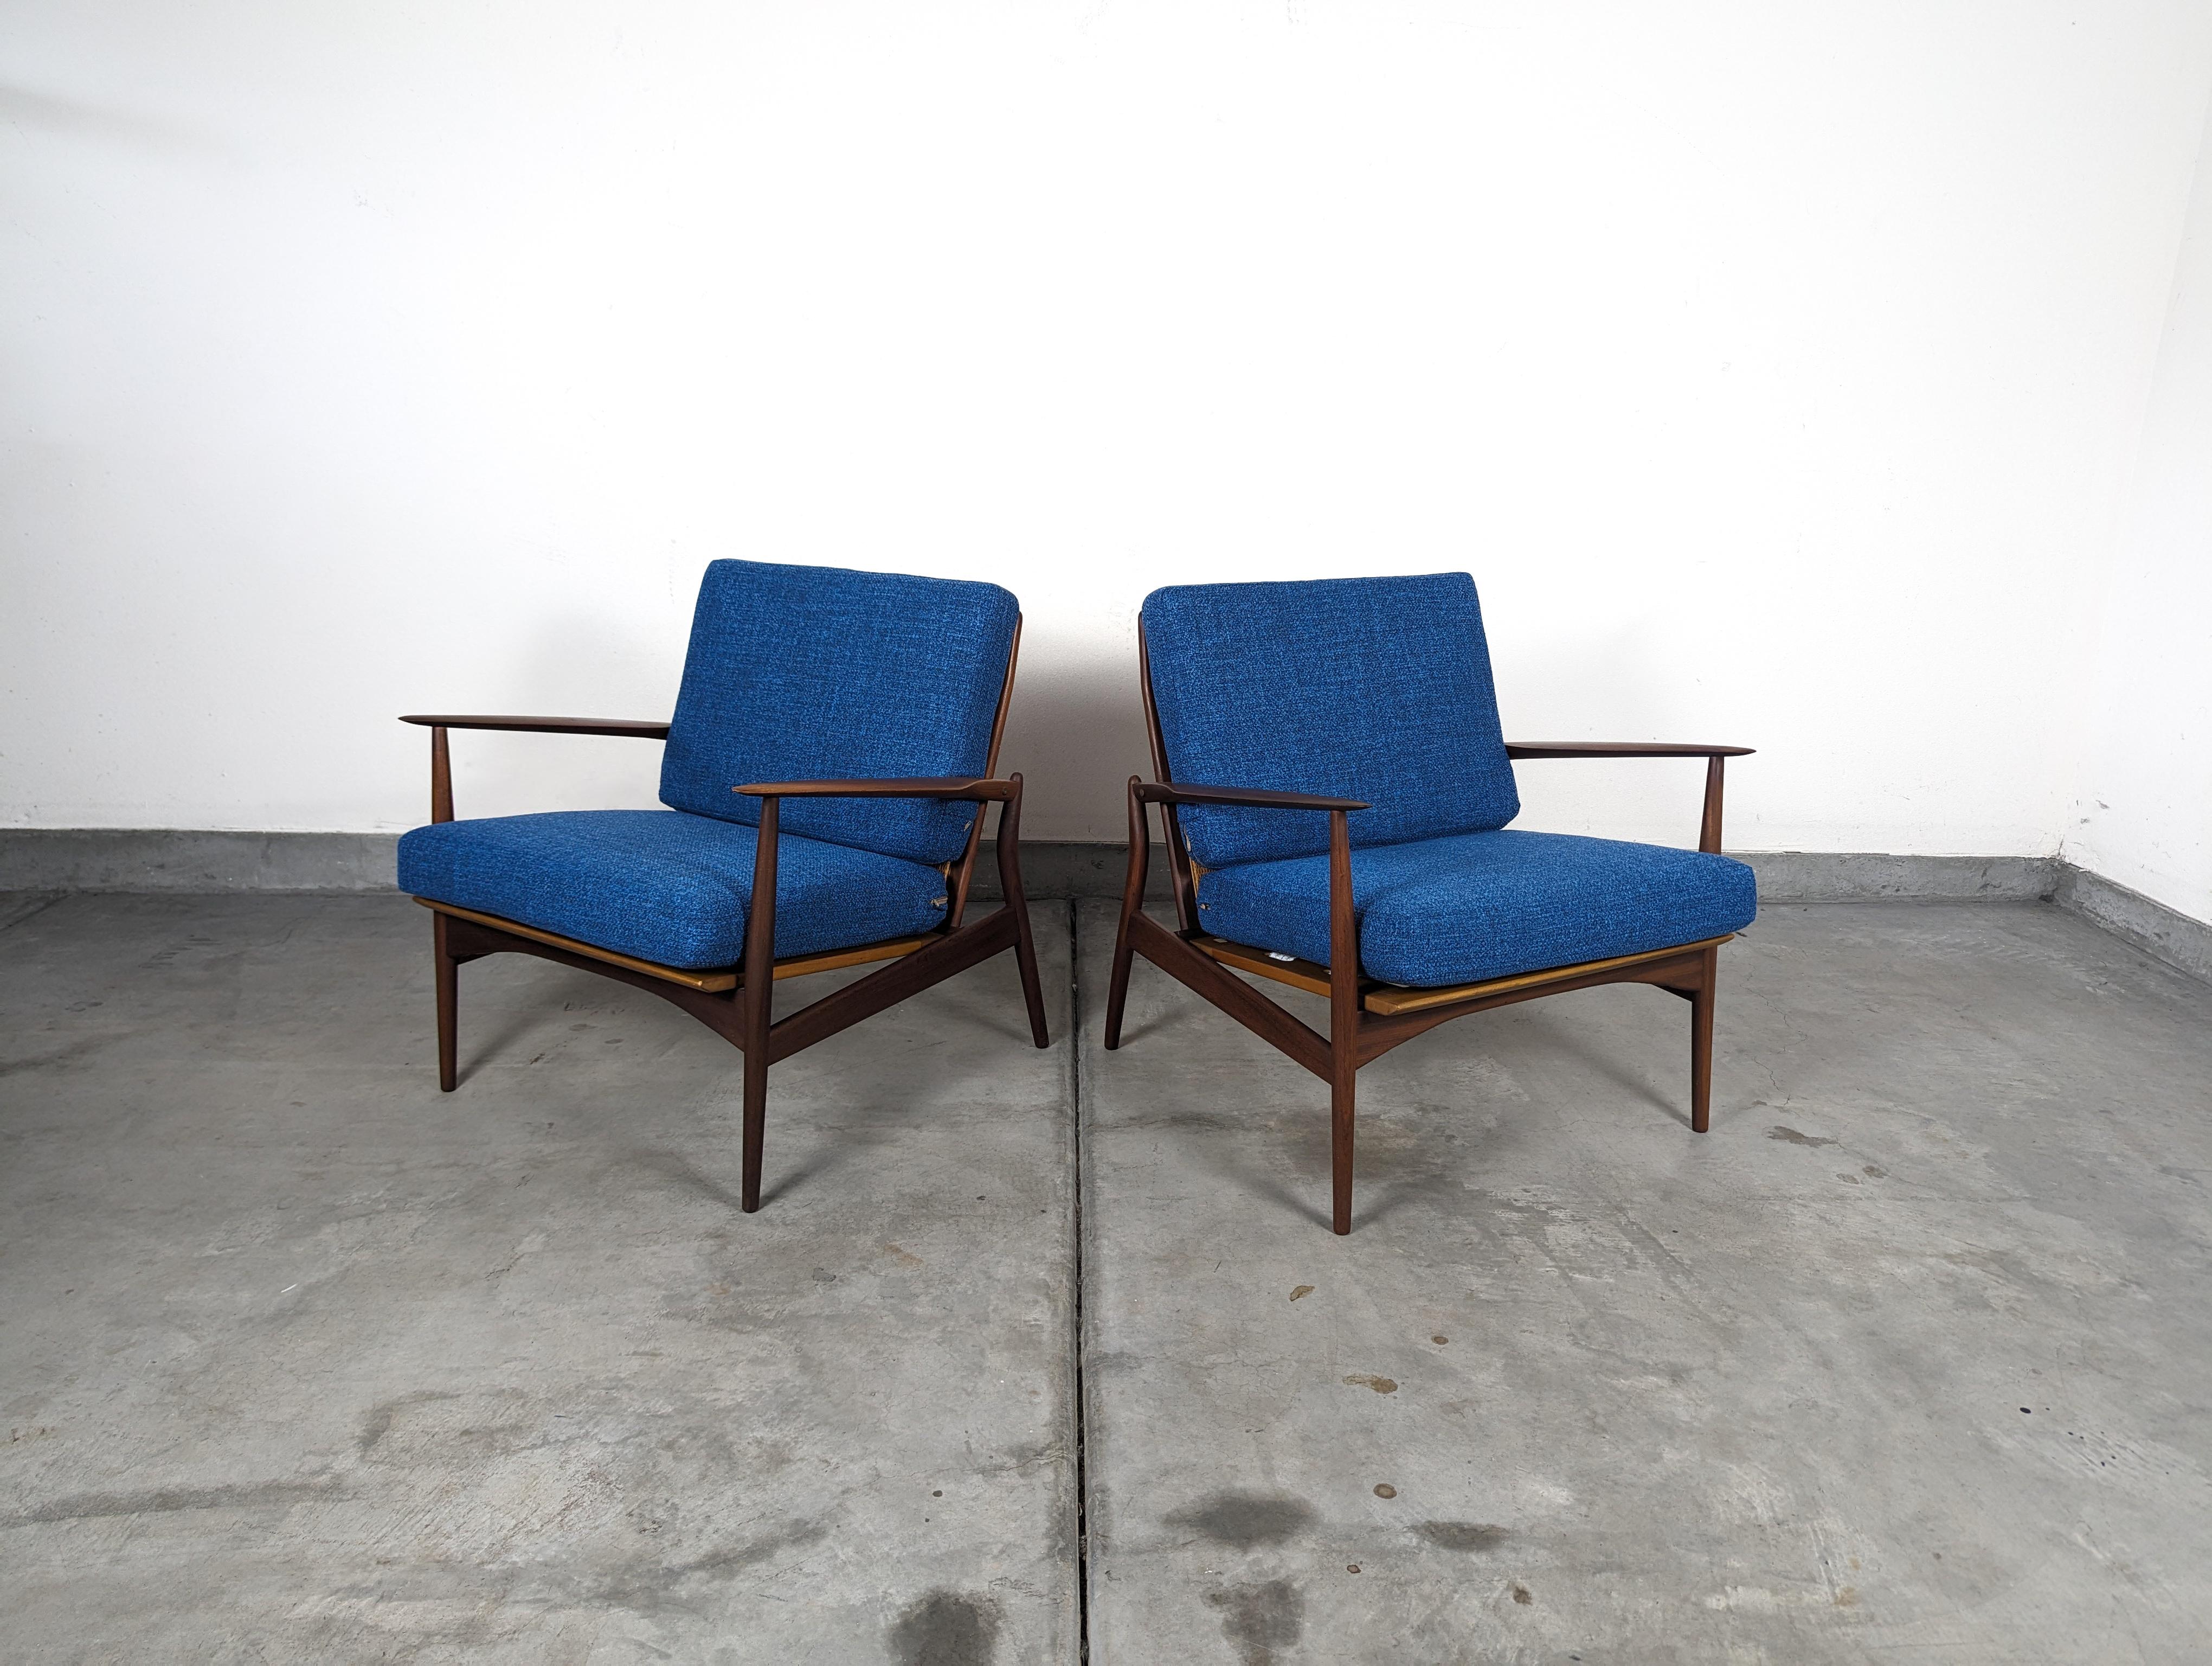 Entdecken Sie den Inbegriff von Mid-Century-Charme mit diesem atemberaubenden Paar Loungesessel des gefeierten dänischen Designers Ib Kofod Larsen, die er in den 1960er Jahren für die angesehene Marke Selig entworfen hat. Diese Speer-Stühle